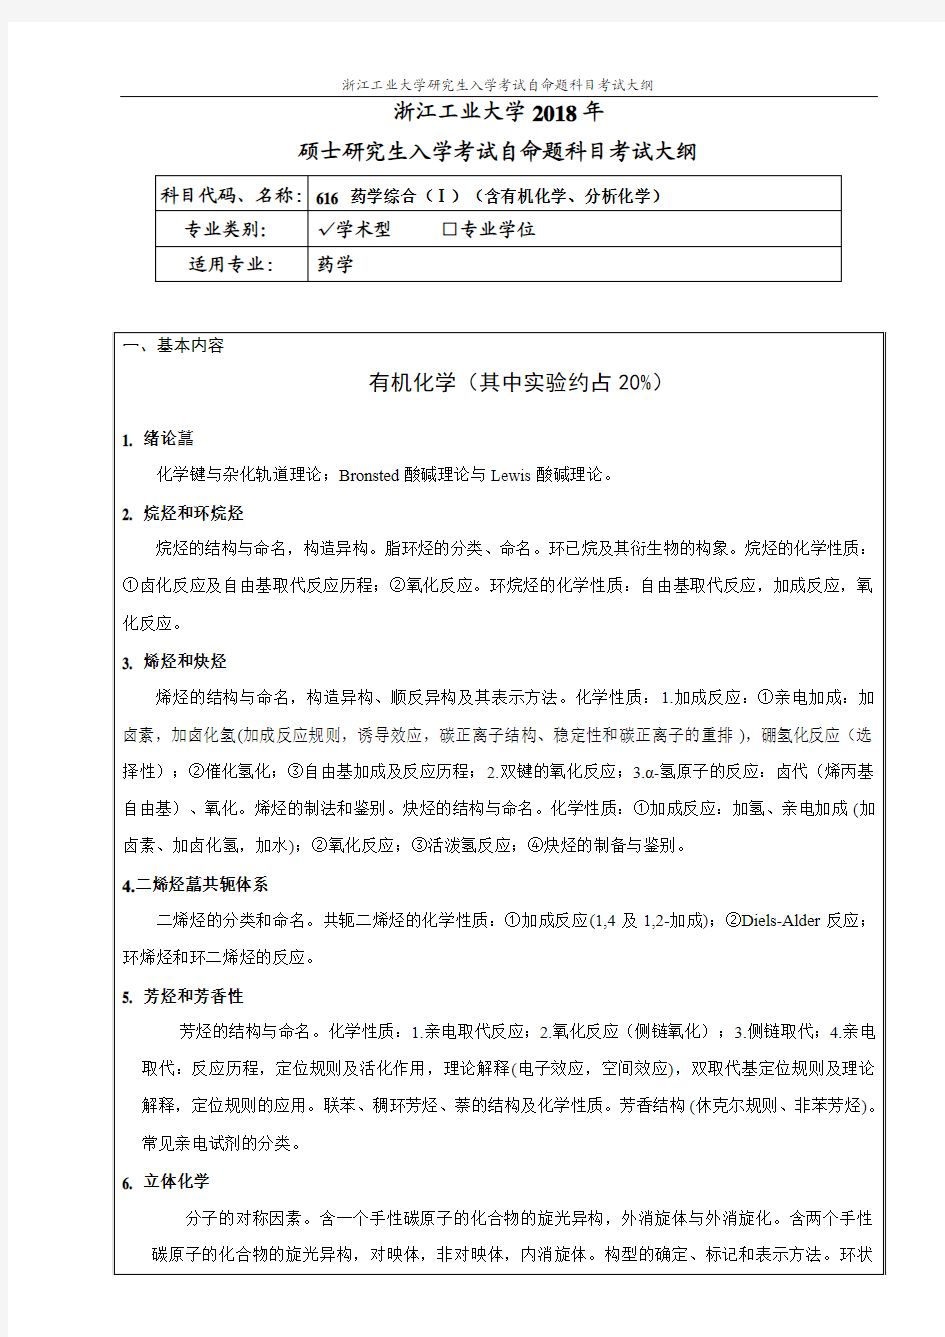 浙江工业大学616药学综合(I)(含有机化学、分析化学 )考纲